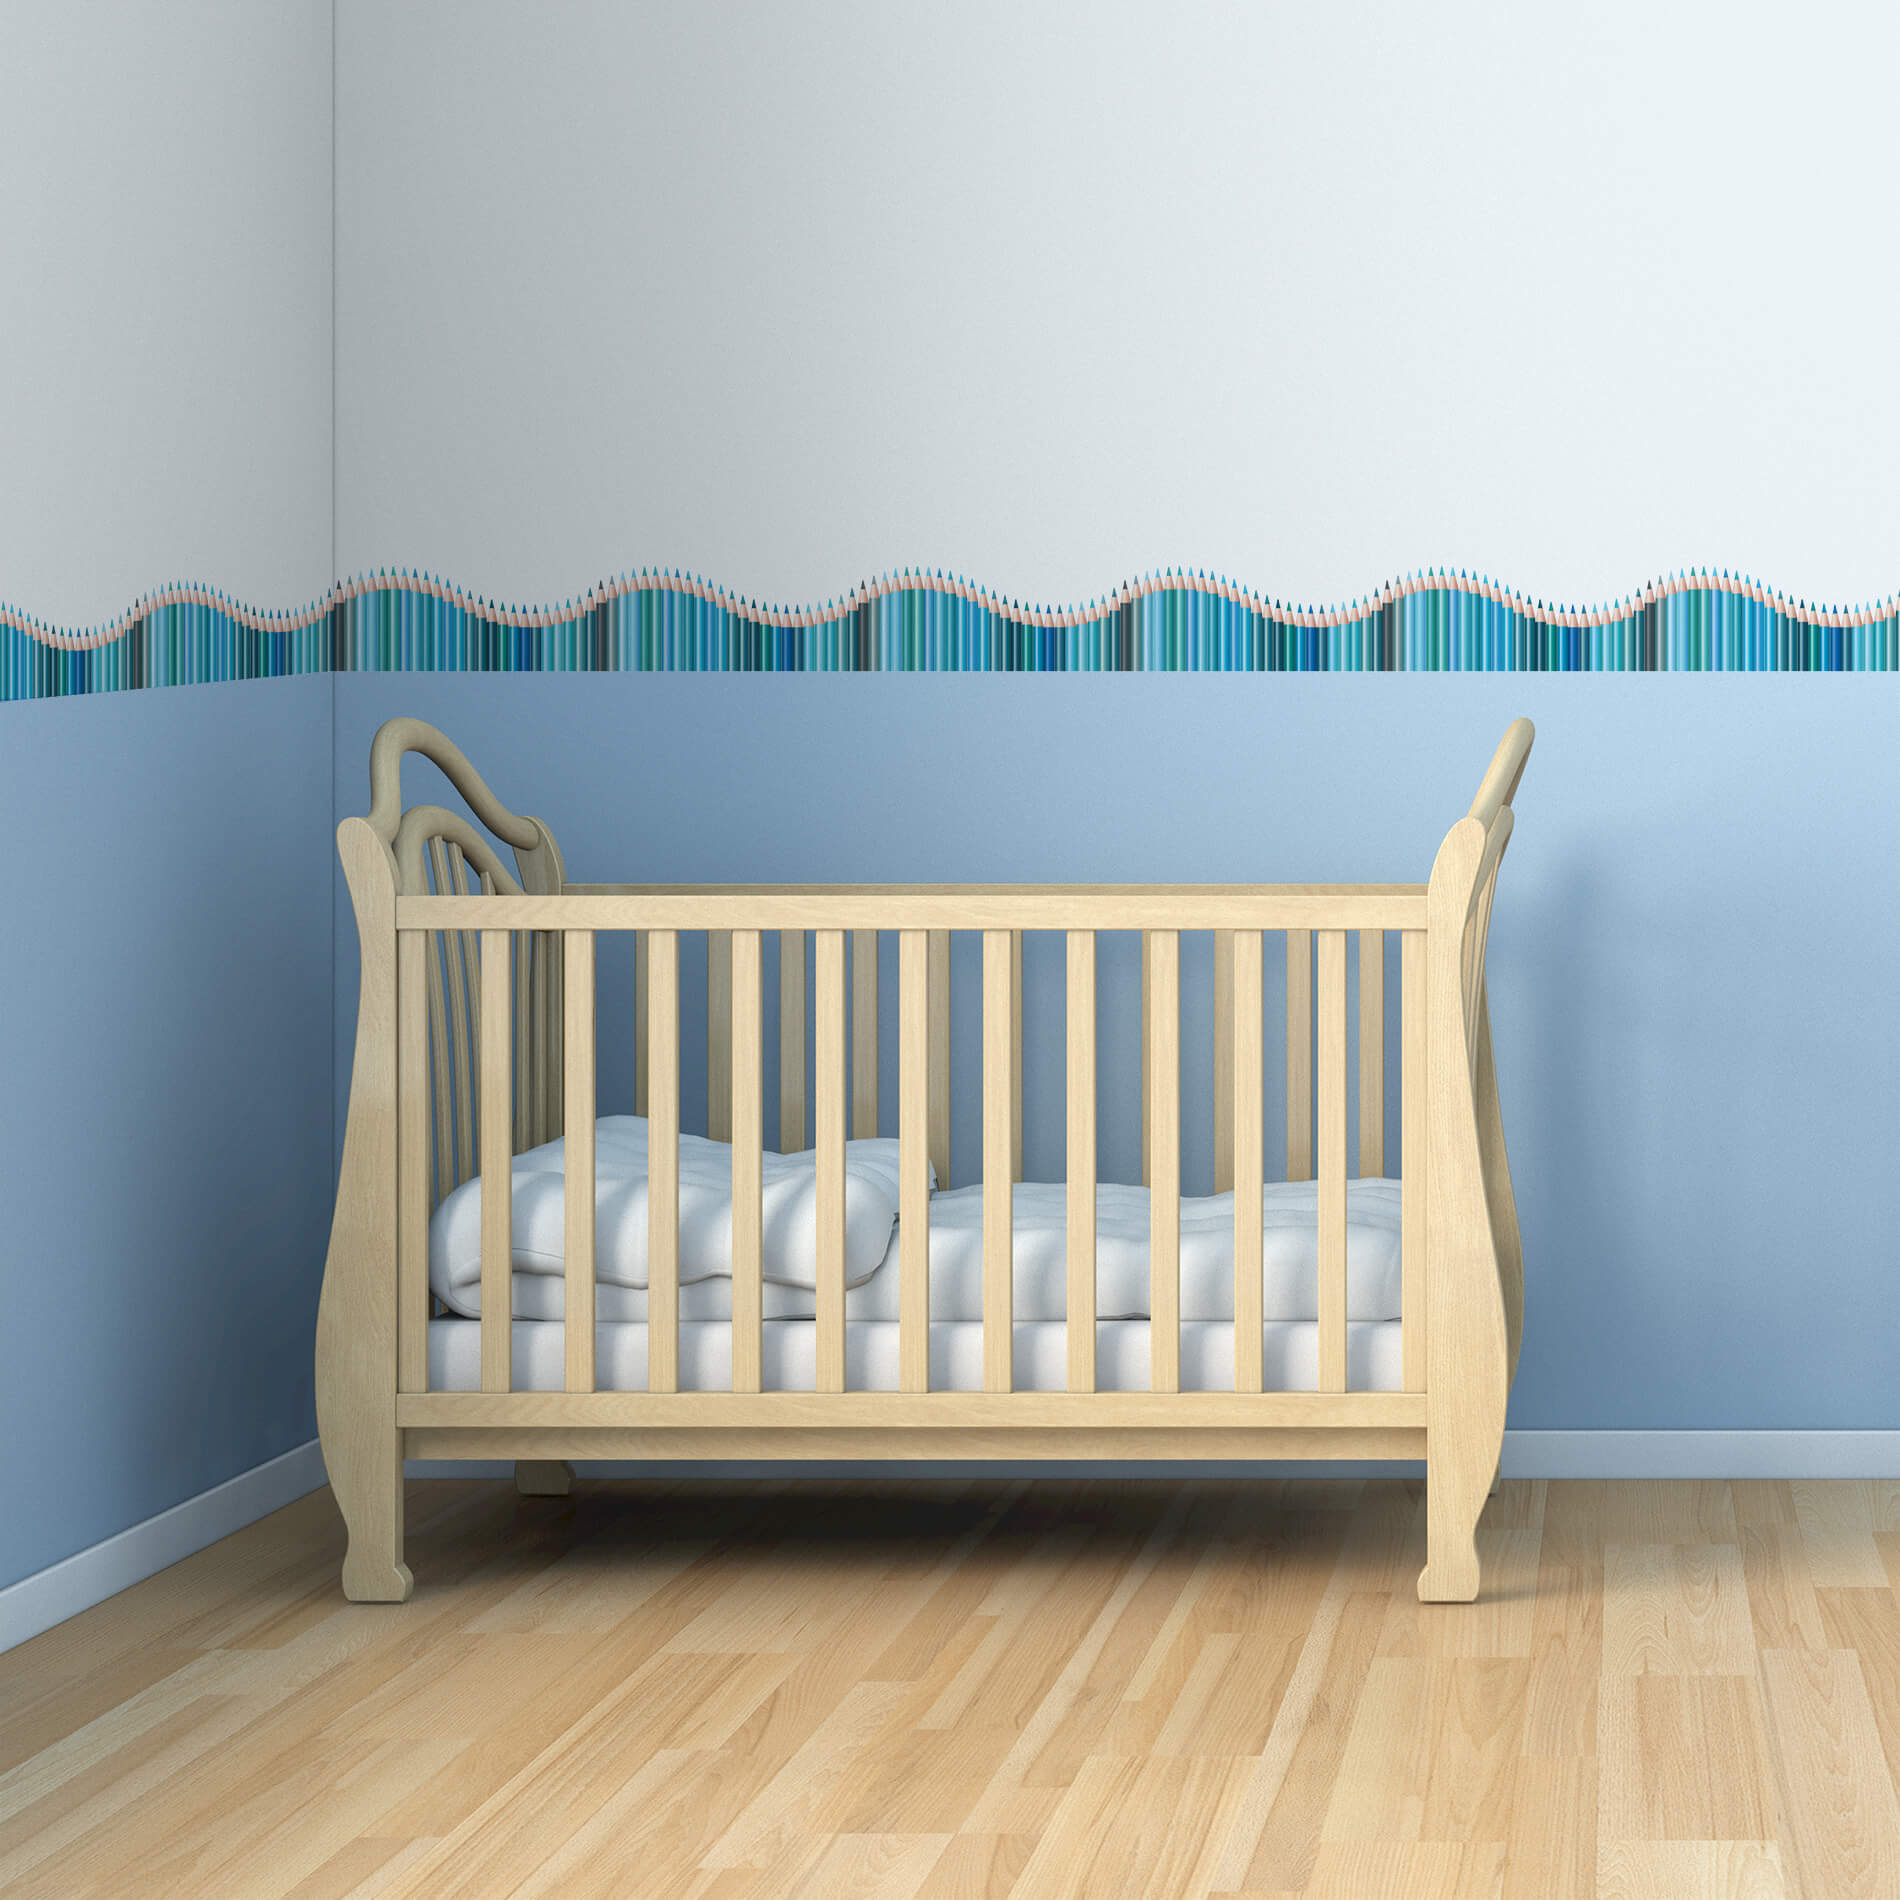 Faixa Decorativa Adesiva Infantil Lapis de Cor Azul 10mx10cm